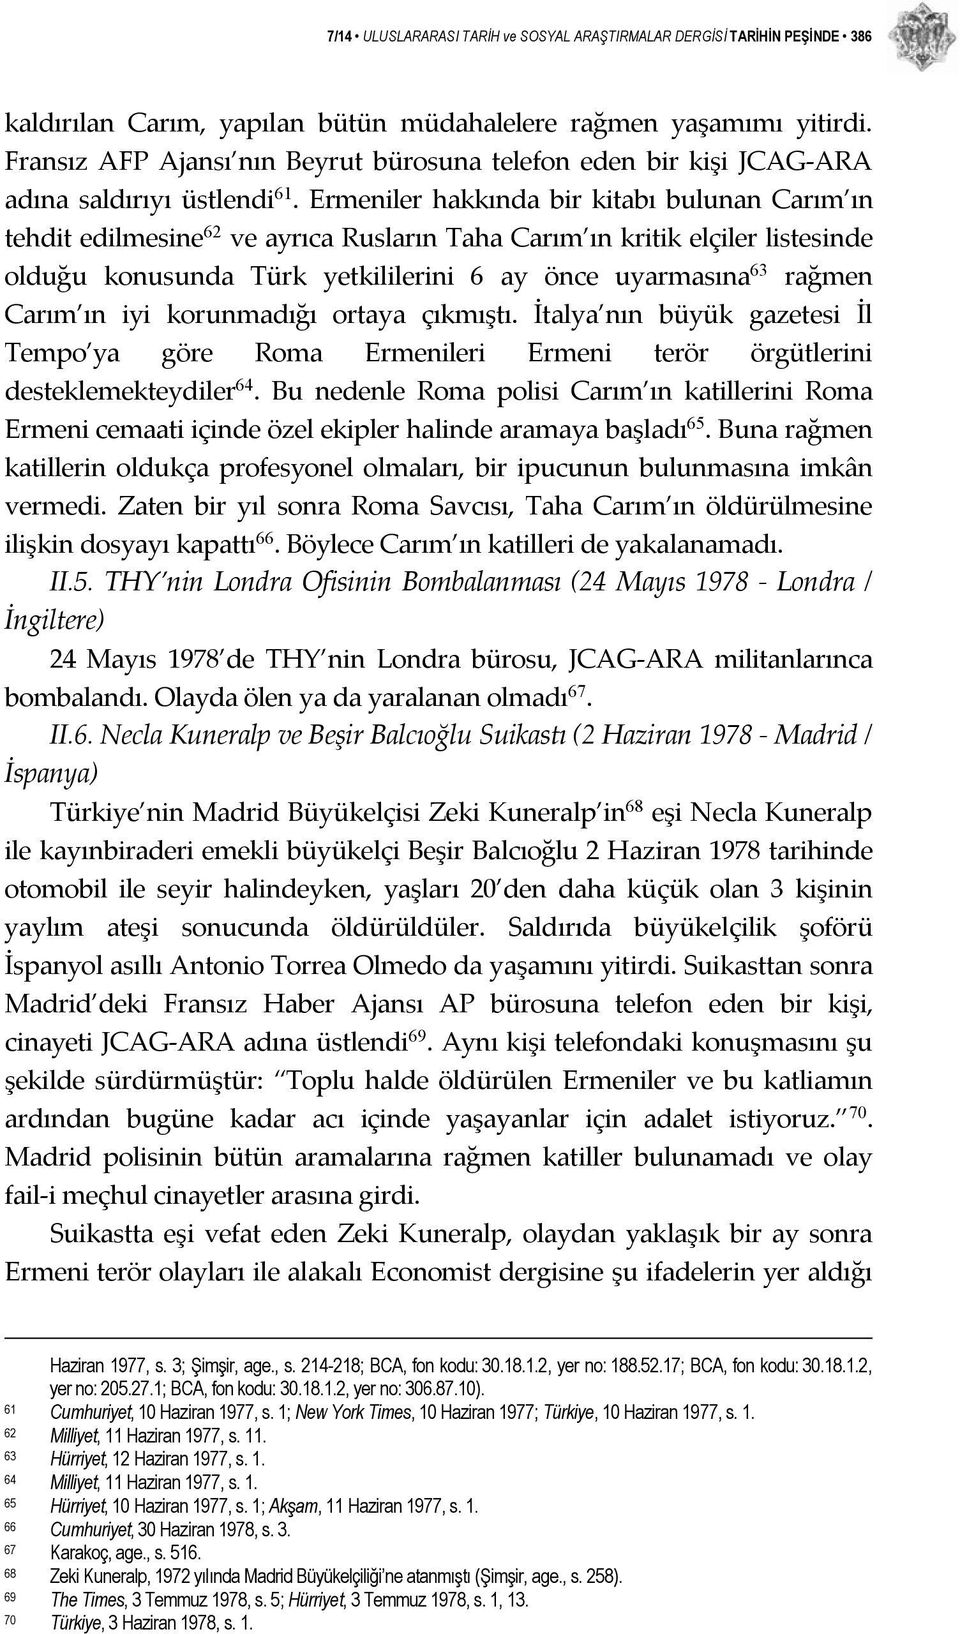 Ermeniler hakkında bir kitabı bulunan Carım ın tehdit edilmesine 62 ve ayrıca Rusların Taha Carım ın kritik elçiler listesinde olduğu konusunda Türk yetkililerini 6 ay önce uyarmasına 63 rağmen Carım